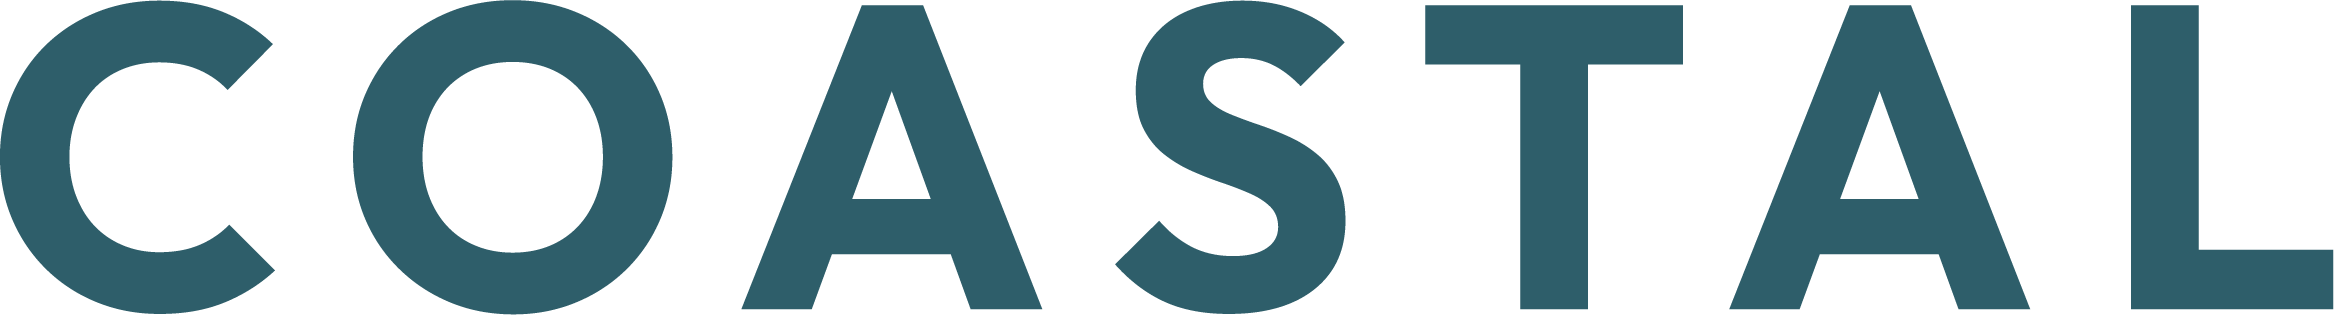 COASTAL logo